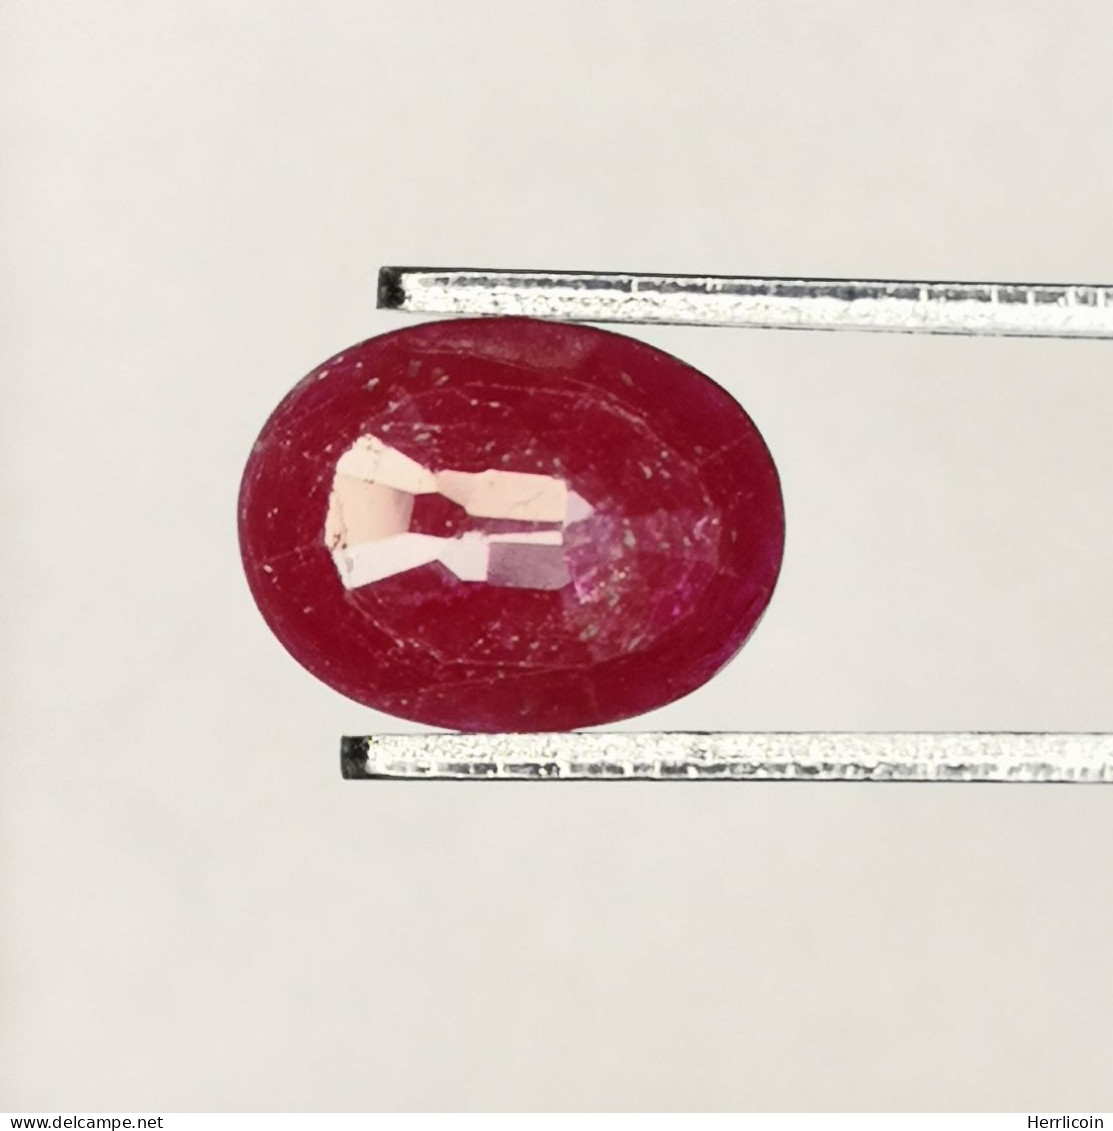 Rubis traité (résidus) de Tanzanie- Ovale 1.20 Carat - 8.0 x 6.0 x 2.5 mm